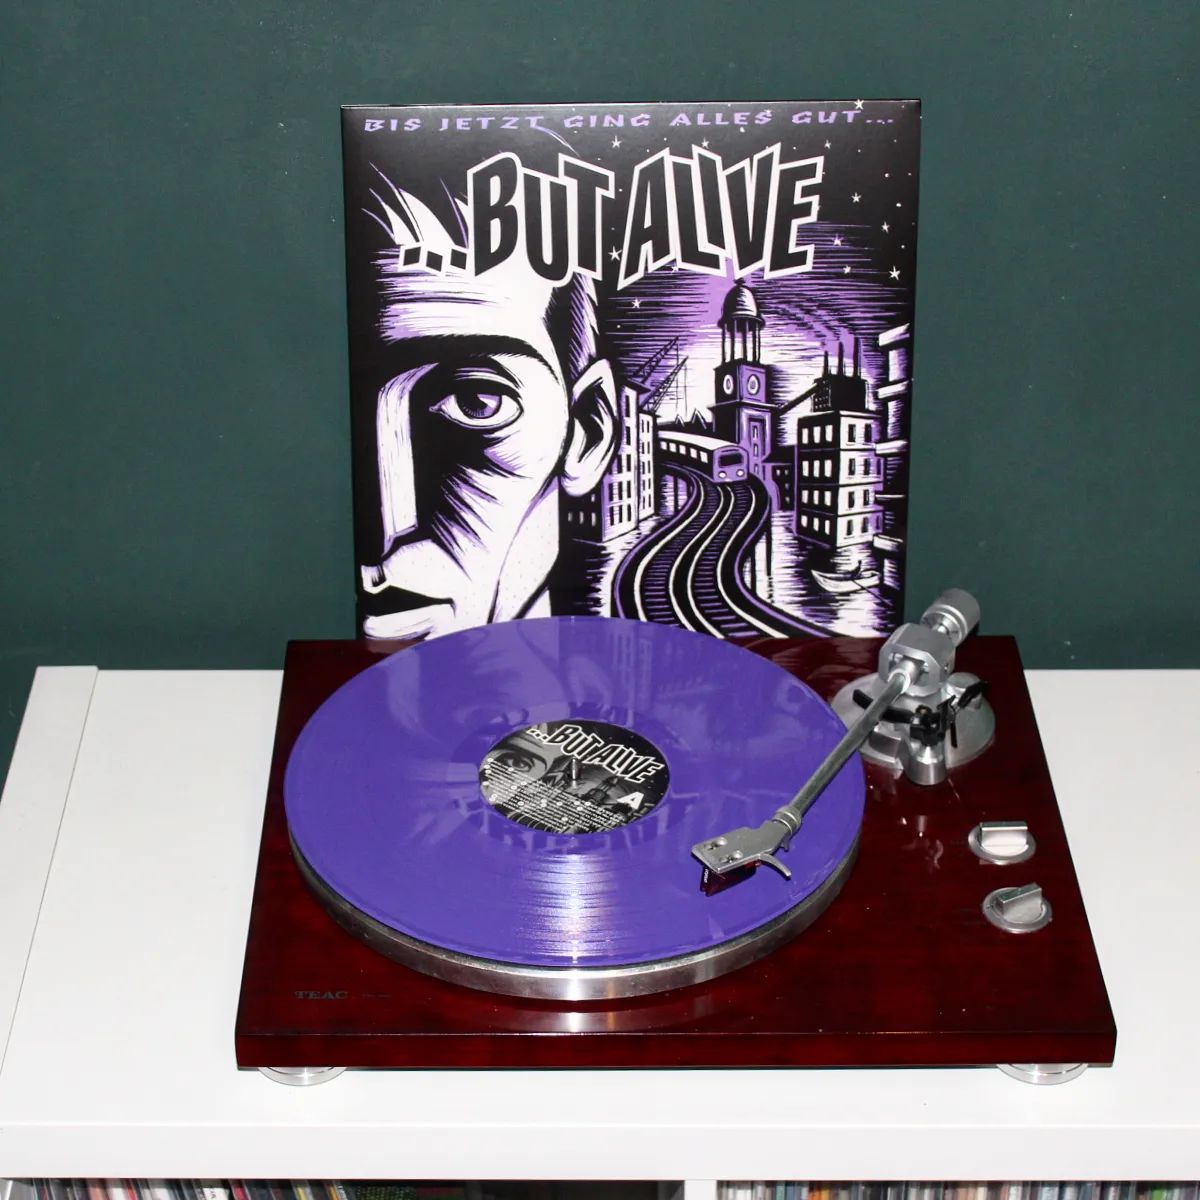 "Und alle um mich herum wollen nur in Würde älter werden. Ich sagte es gestern, sag es morgen: macht euch um mich doch keine Sorgen und kümmert euch zuerst um euch und fickt euch!" 😎  So, den letzten Arbeitstag erfolgreich hinter mich gebracht. Irgendwie ist das die perfekte Platte für den heutigen Feierabend - auch vom Albumtitel her!  ... But Alive - Bis jetzt ging alles gut auf purple Vinyl.  #vinyl #vinyladdict #butalive #bisjetztgingallesgut #barecords #punk #coloredvinyl